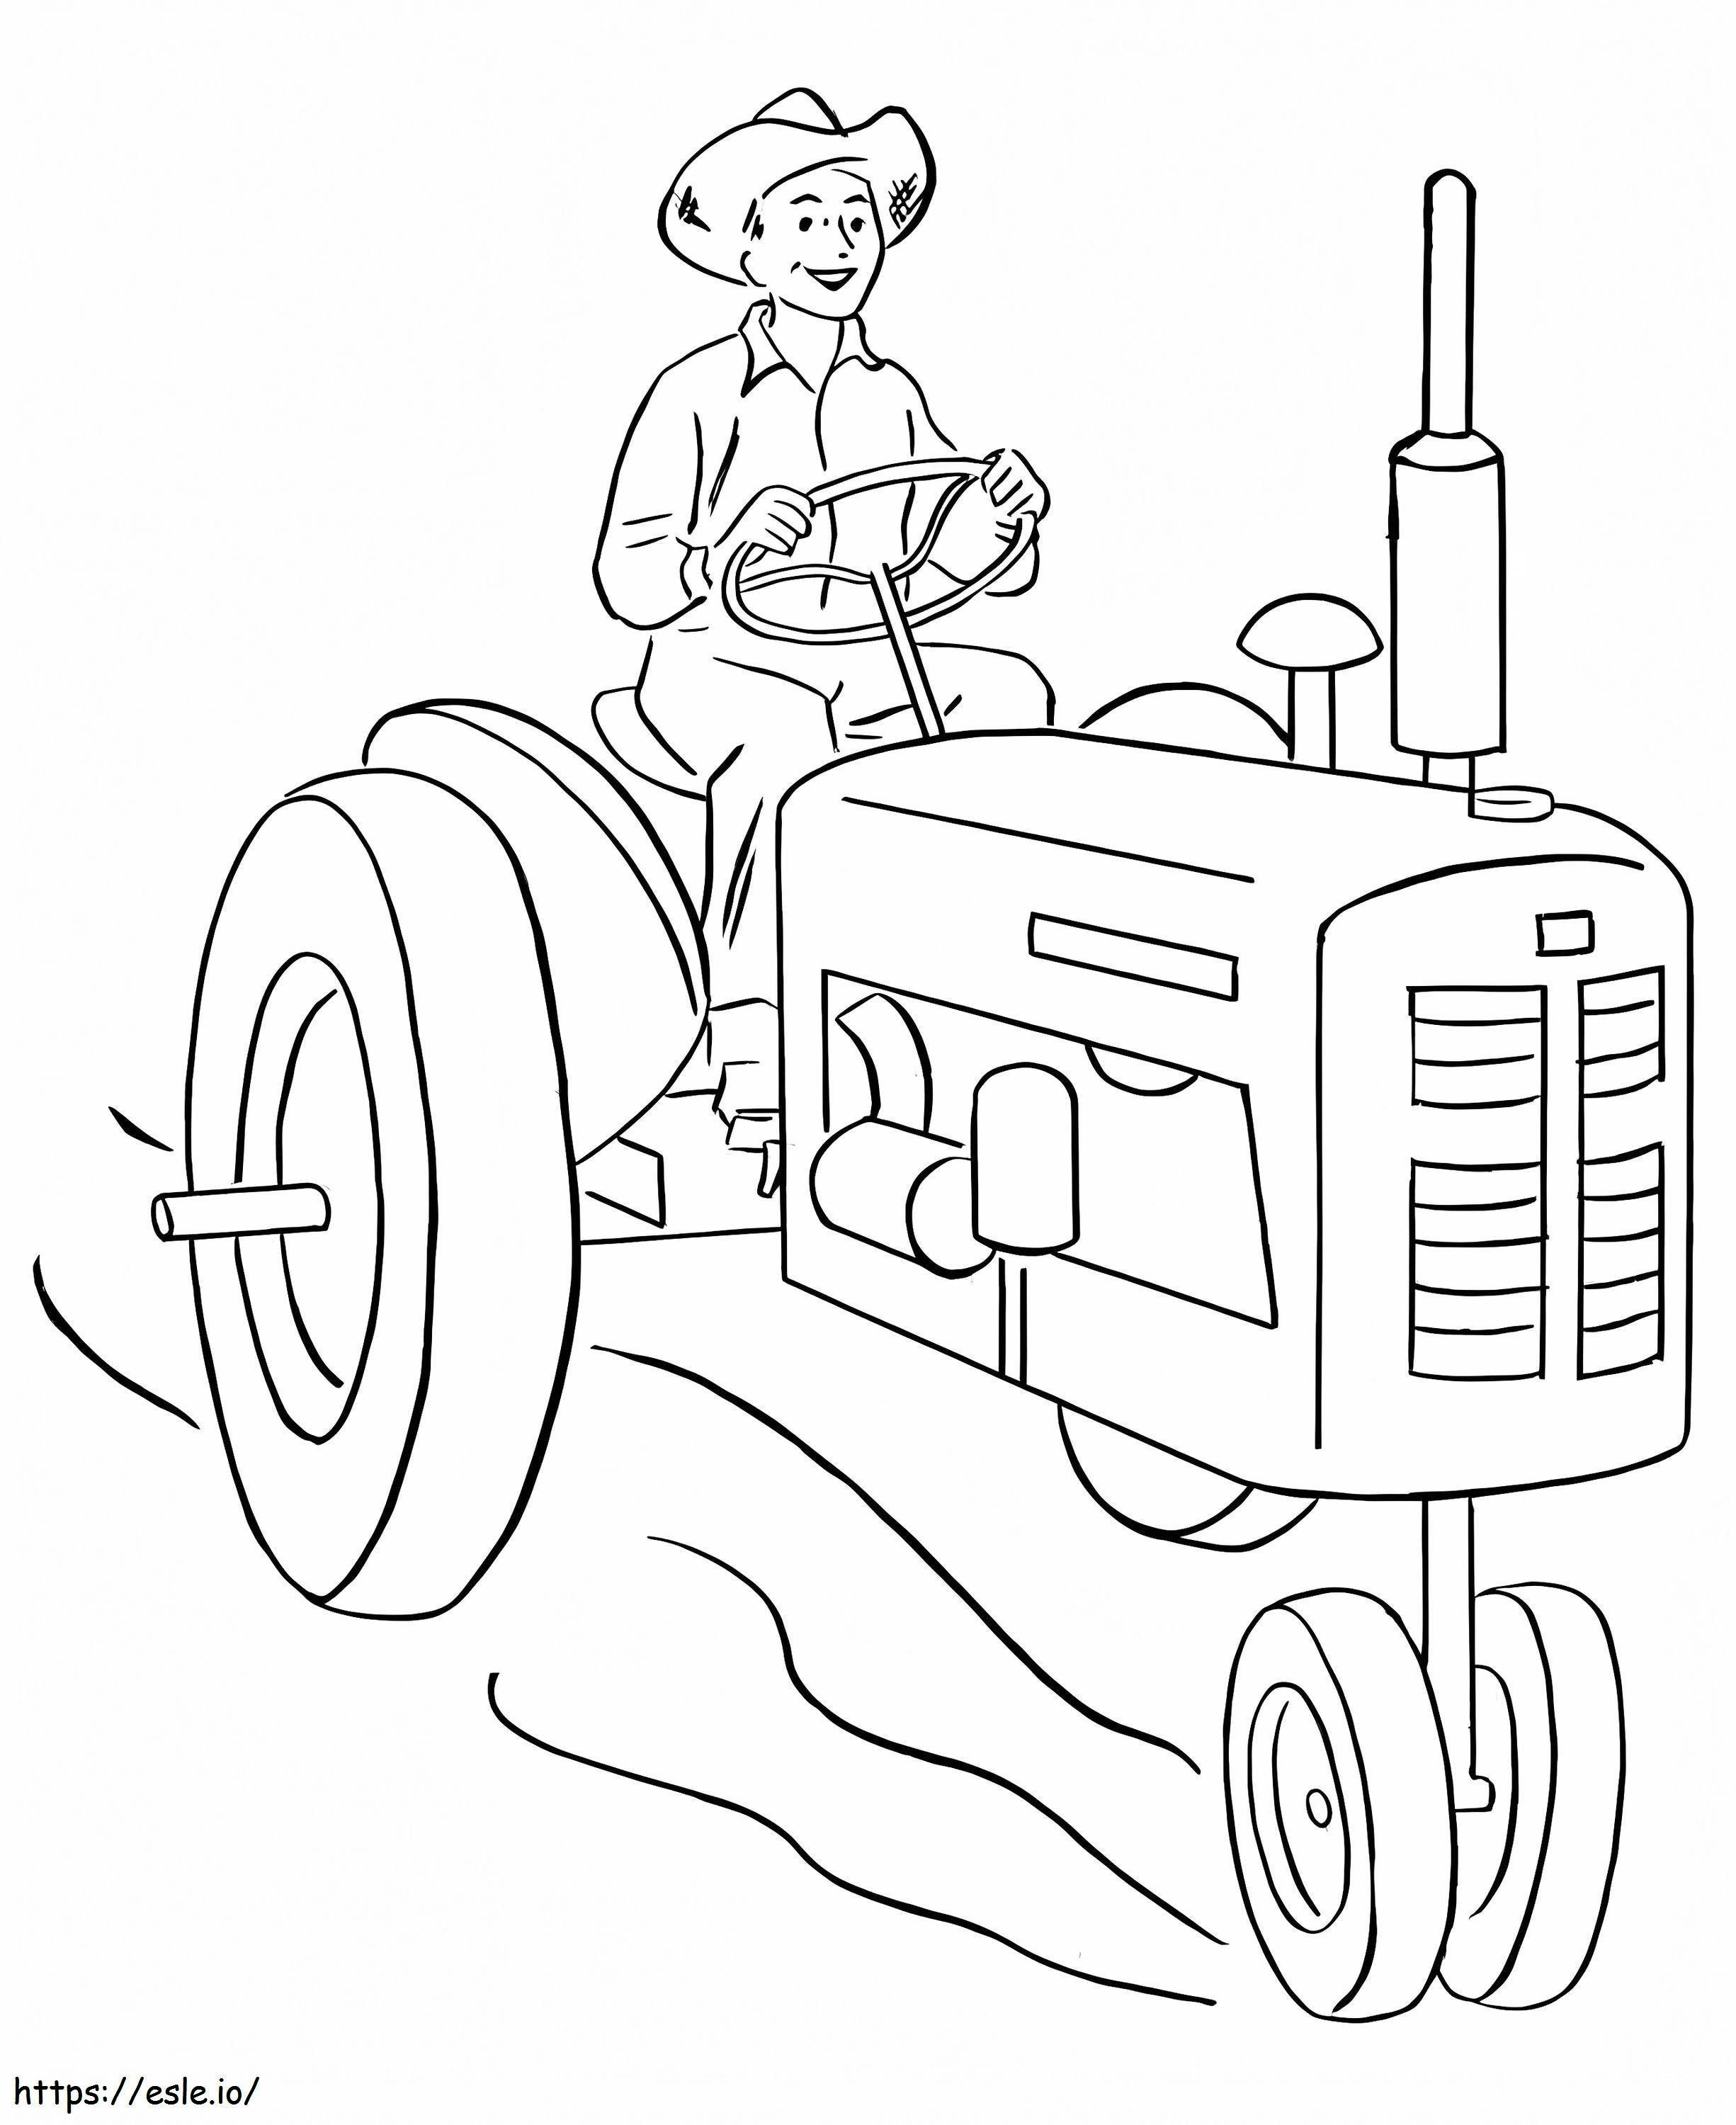 Fermier Stând Pe Tractor La Fermă de colorat